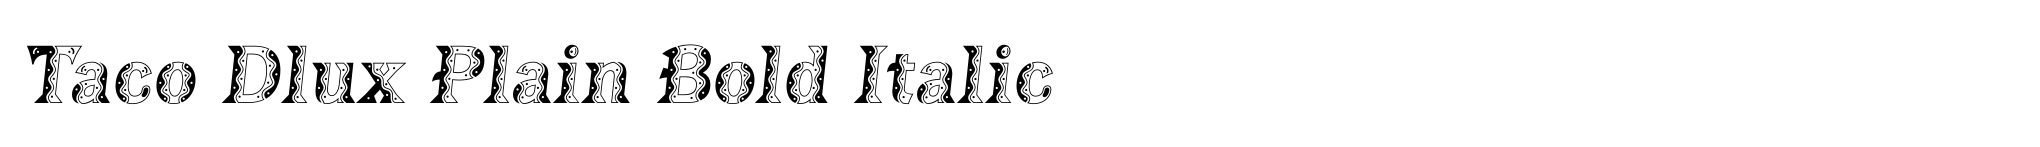 Taco Dlux Plain Bold Italic image